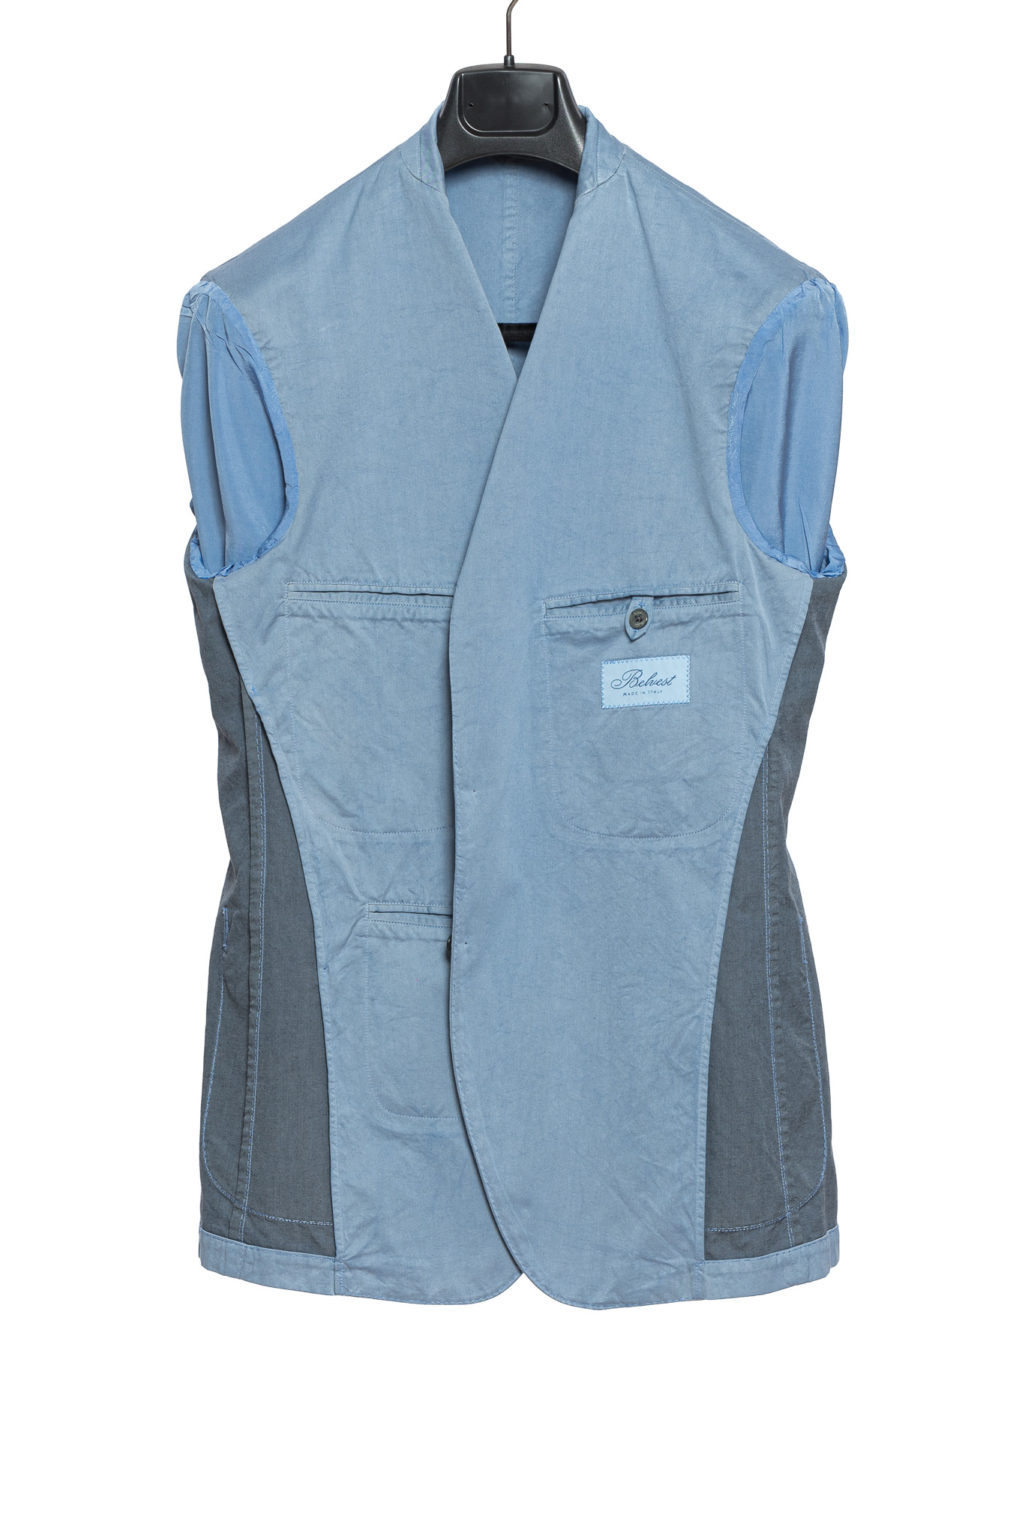 $2490 Belvest Light Blue Solid Sport Suit Cotton Silk 40 US / 50 US ...